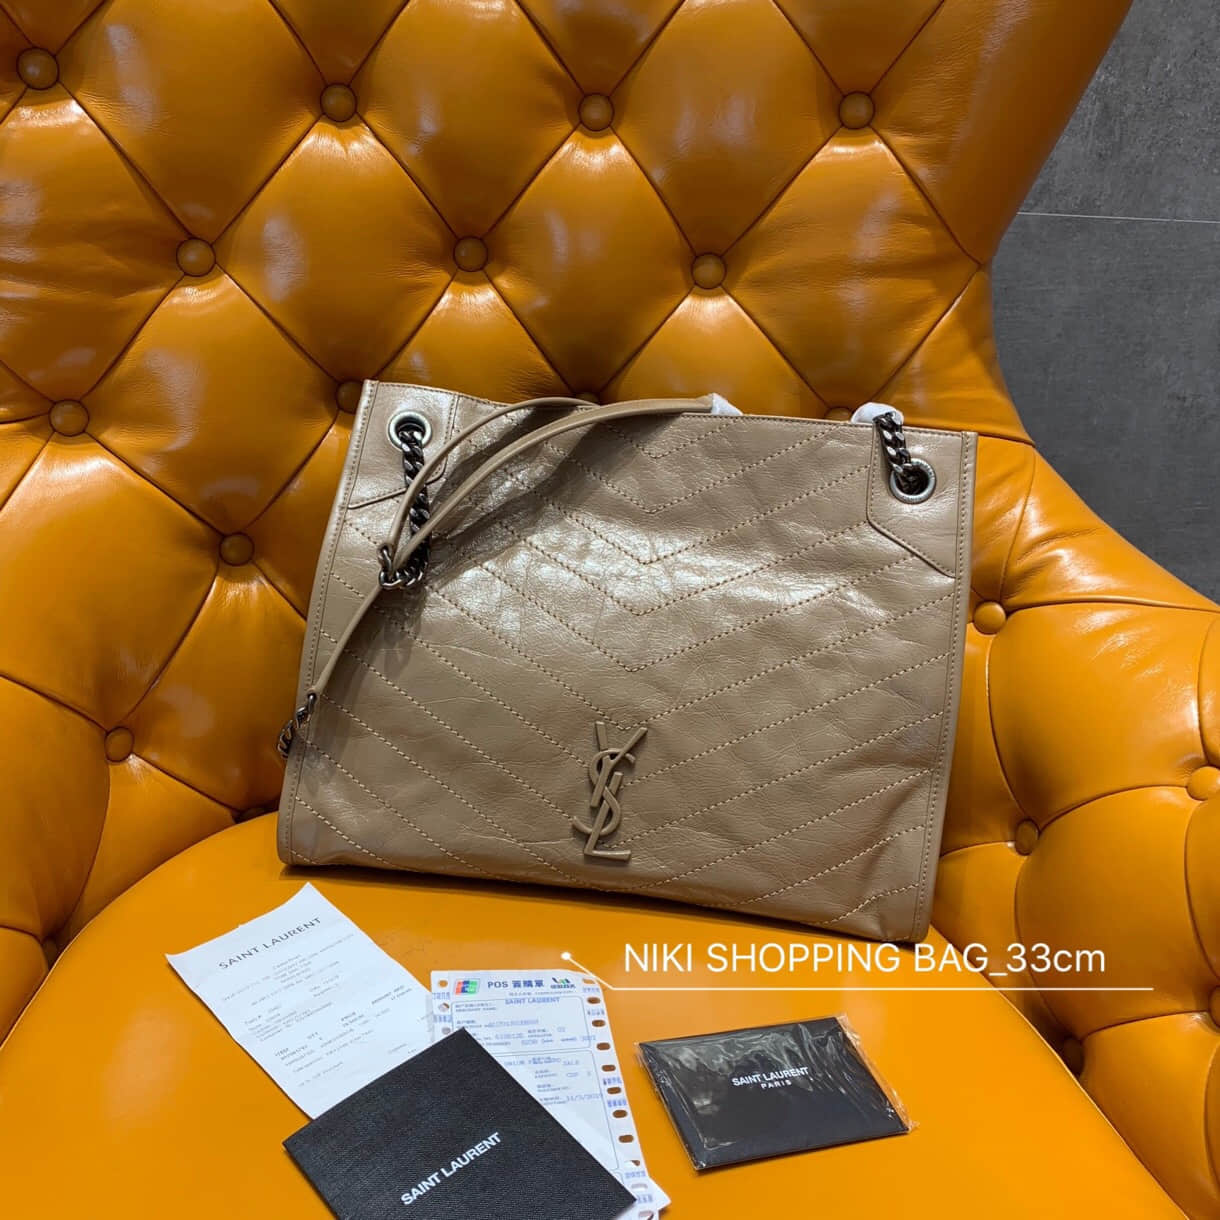 圣罗兰购物袋 YSL/圣罗兰 NIKI SHOPPING BAG 皱褶复古皮革购物袋 577999A 